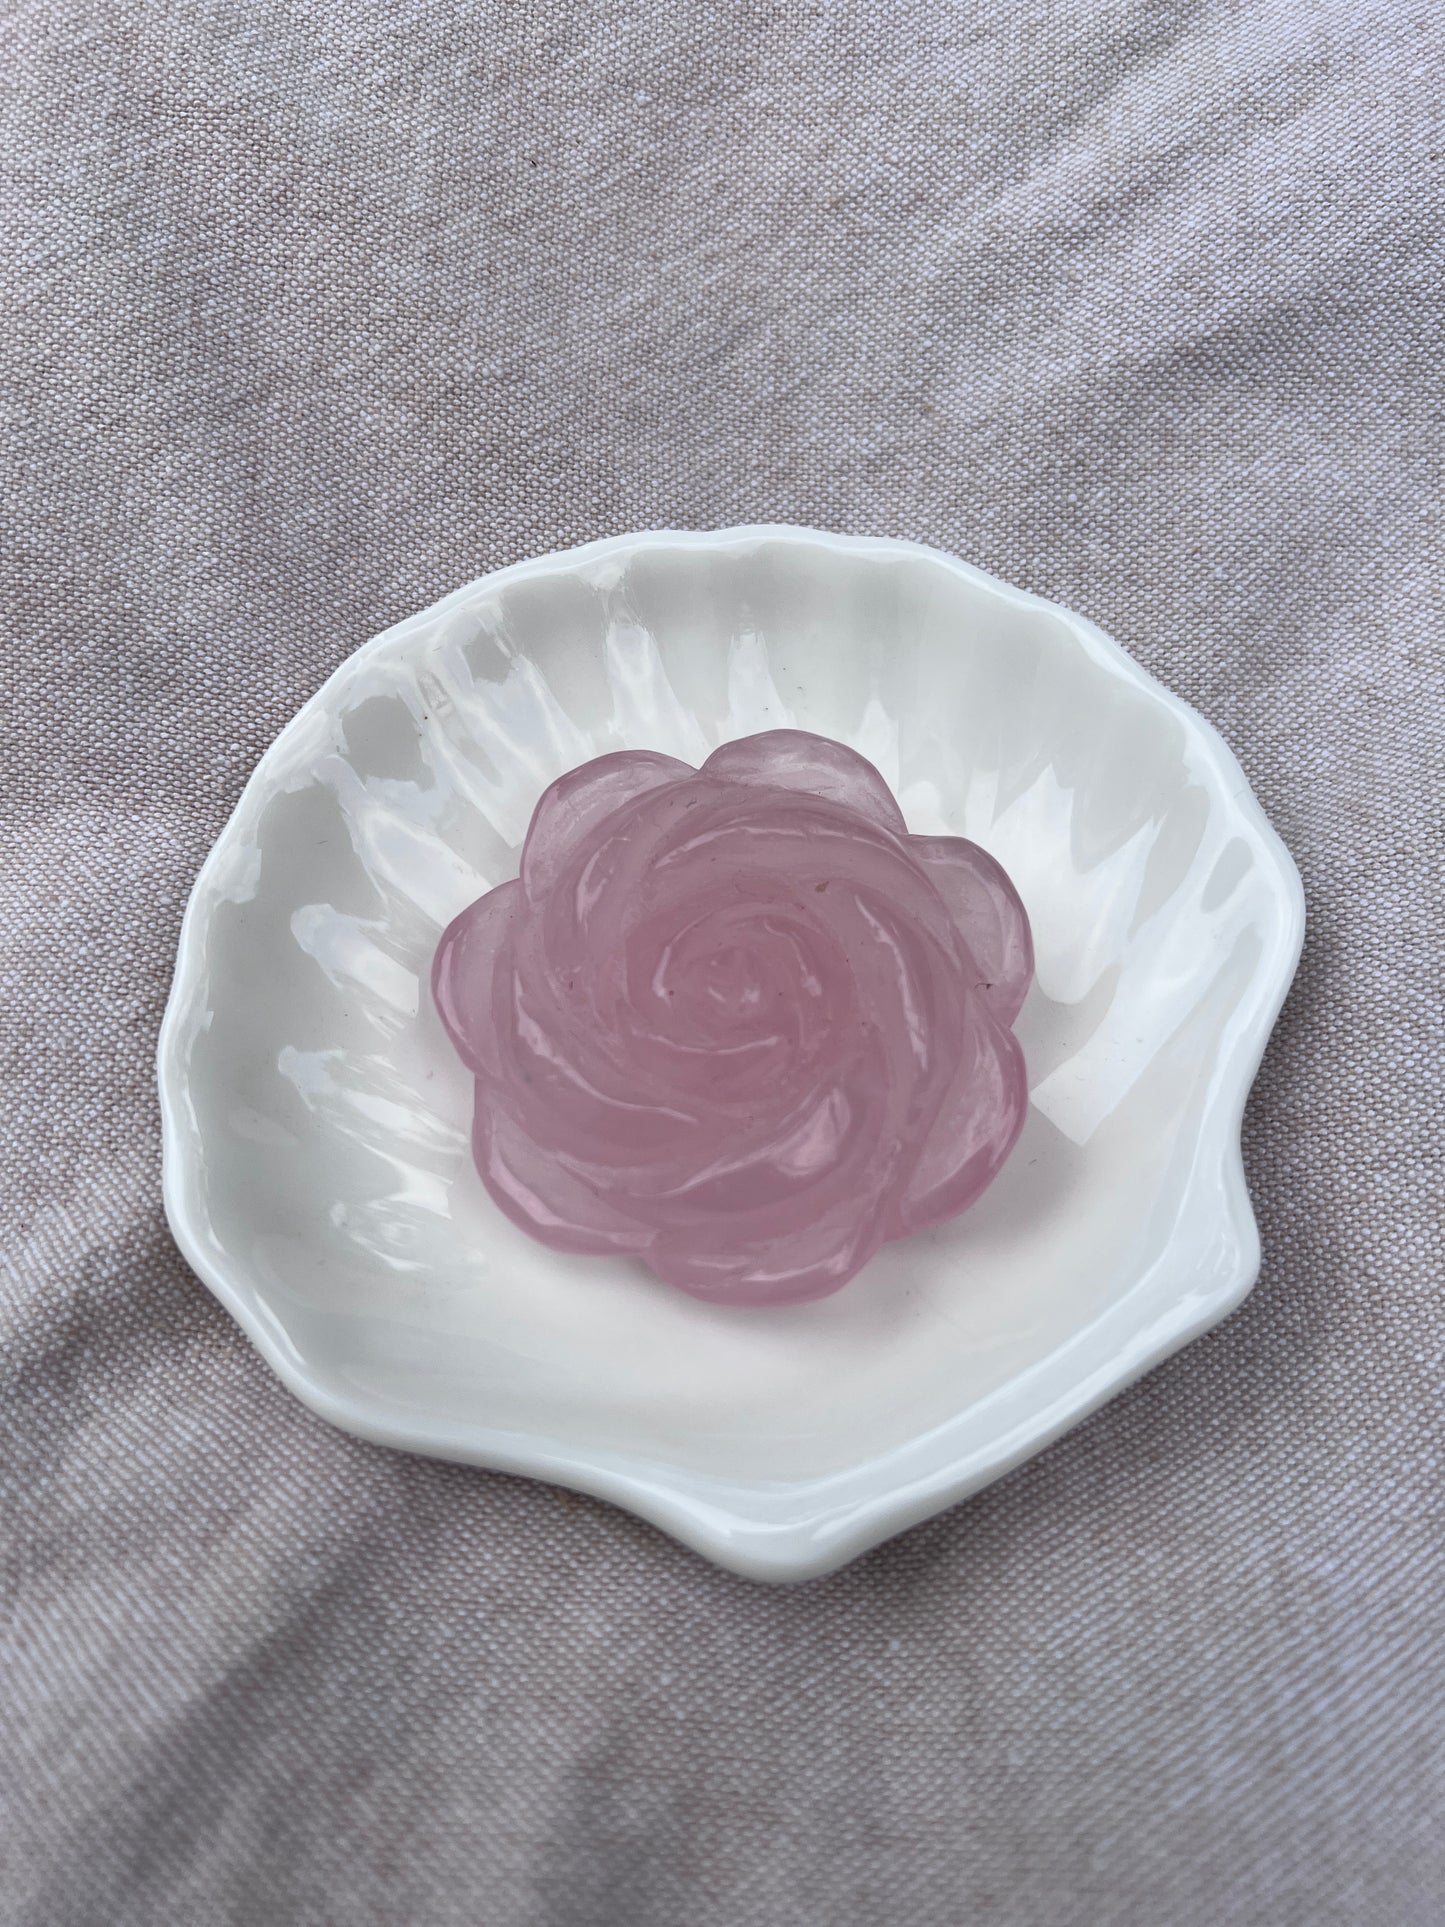 Rose Quartz flower